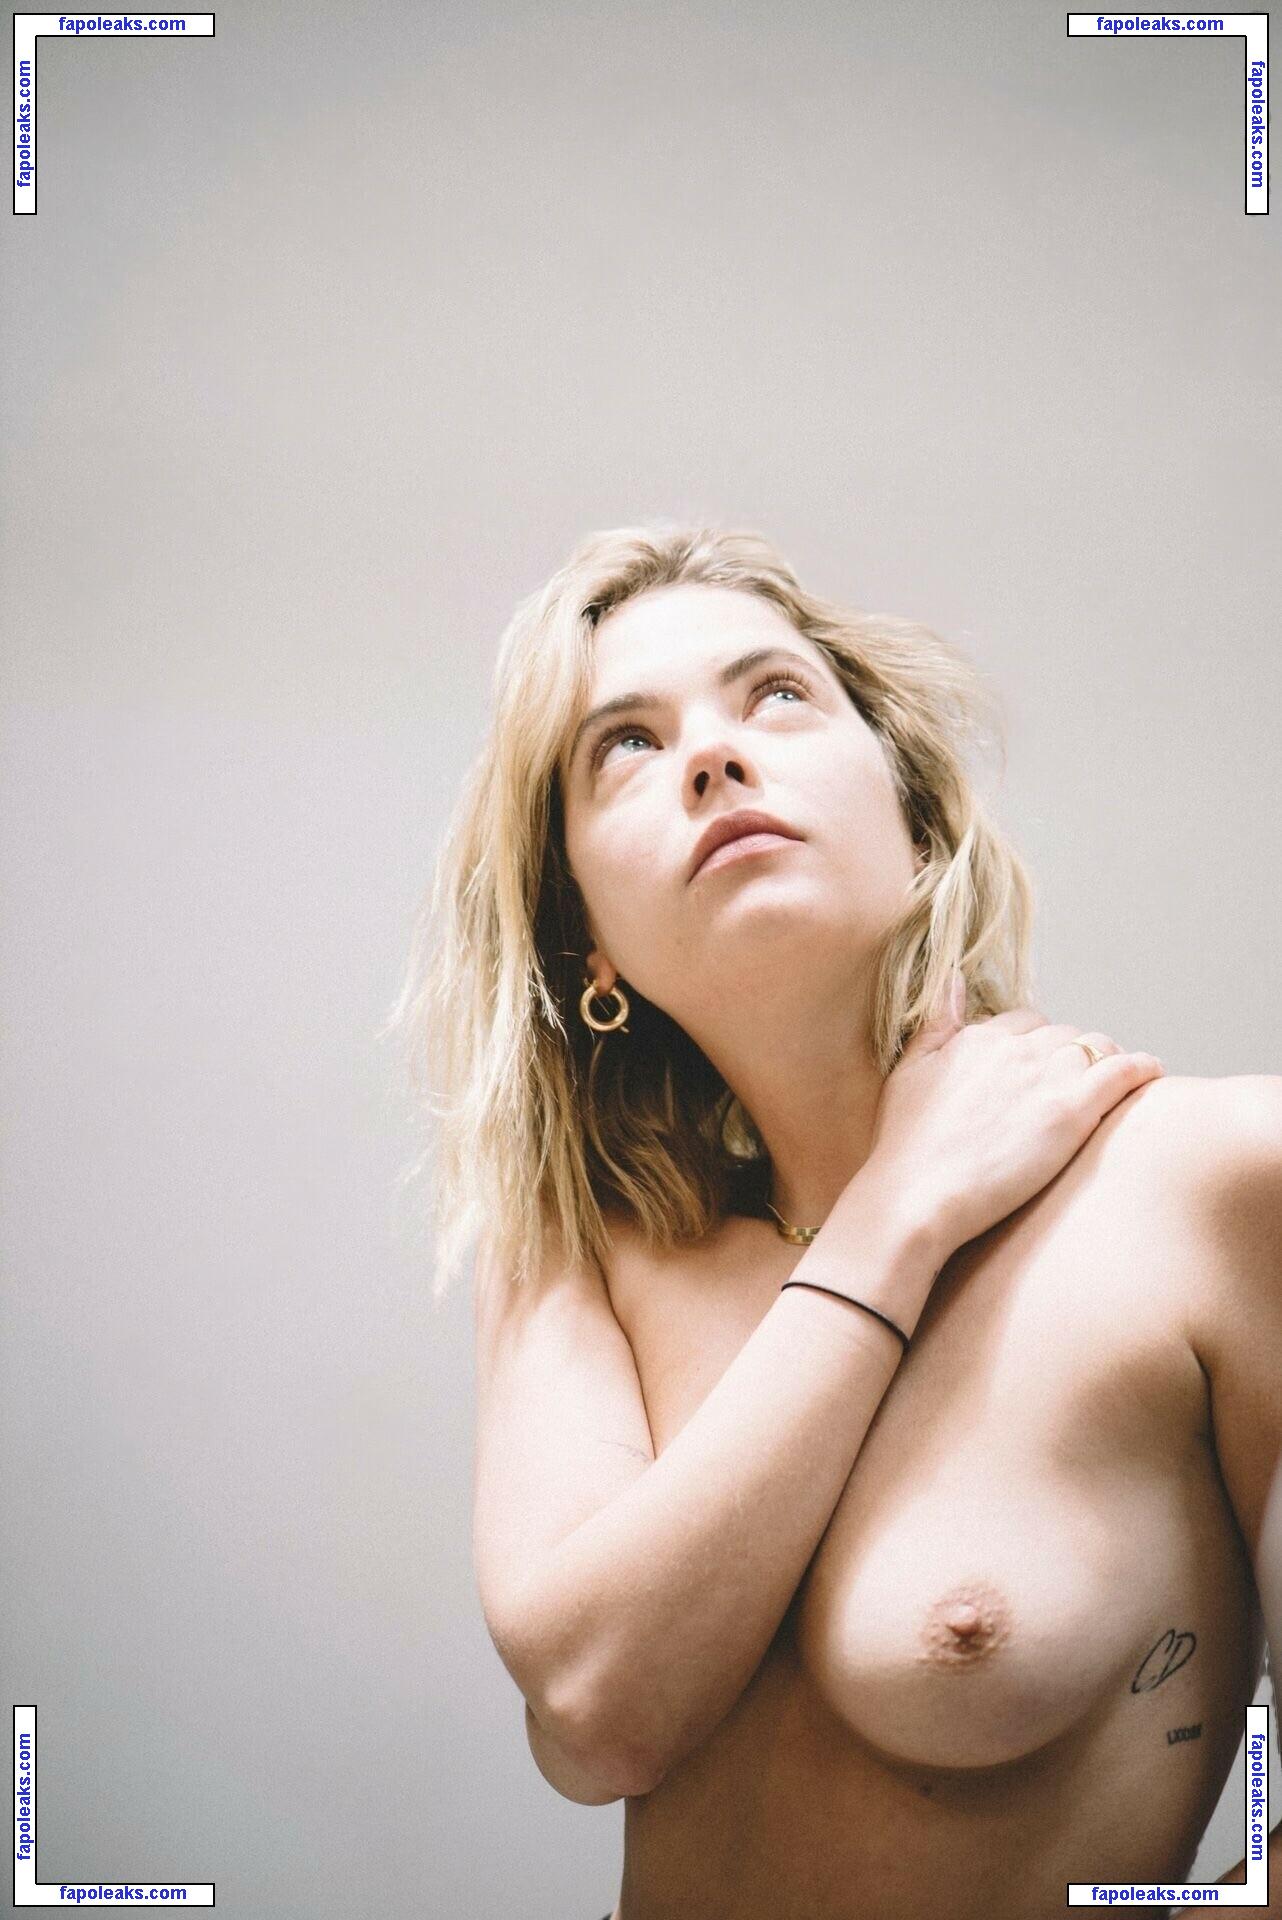 Ashley Benson / ashleybenson nude photo #1858 from OnlyFans